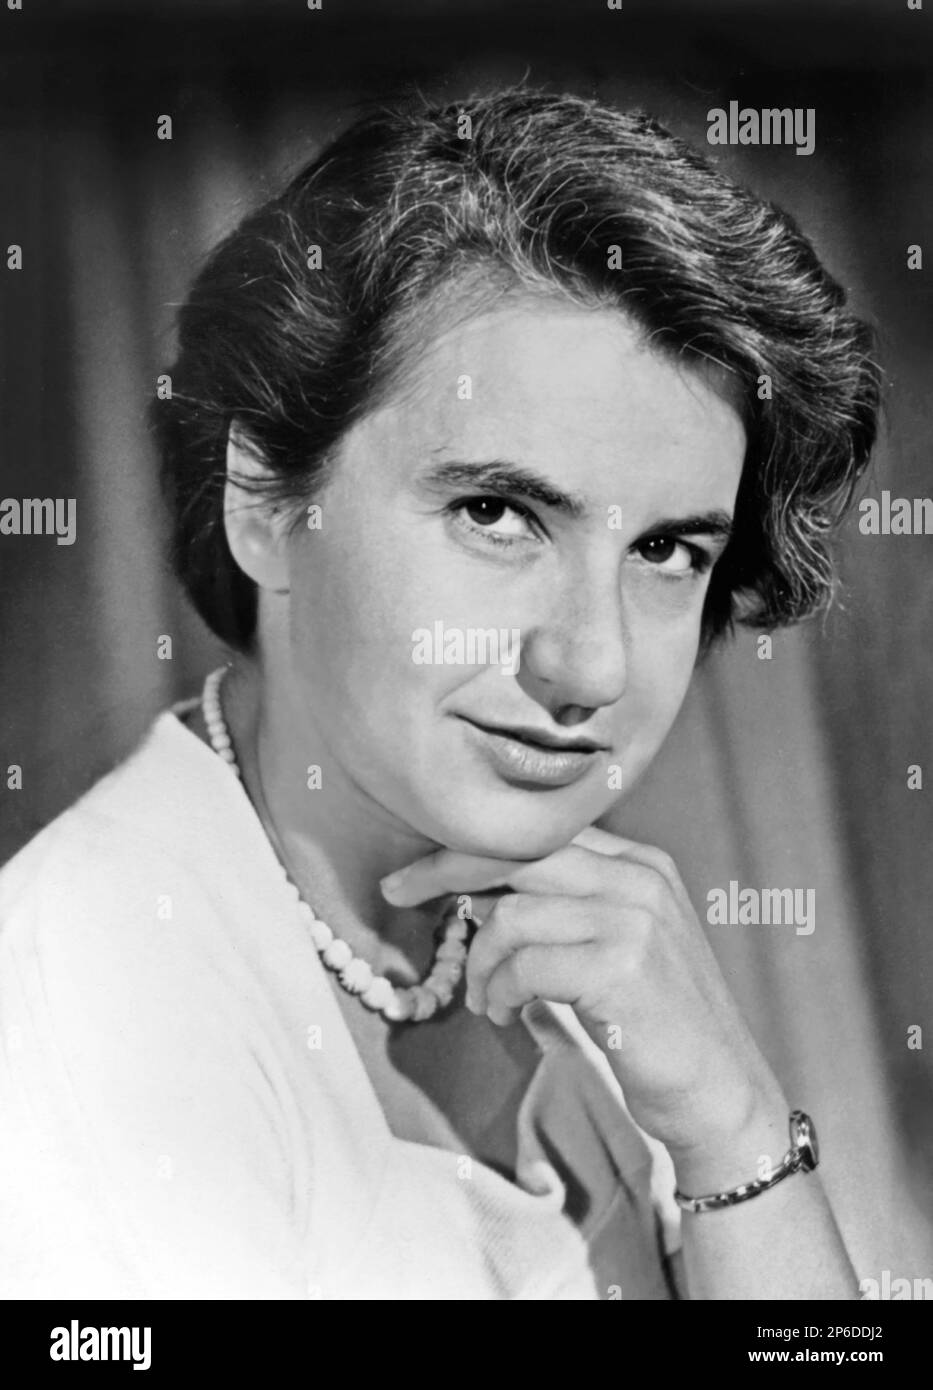 A cargo de Rosalind Franklin. Retrato de la química y pionera del ADN, Rosalind Elsie Franklin (1920-1958) Foto de stock